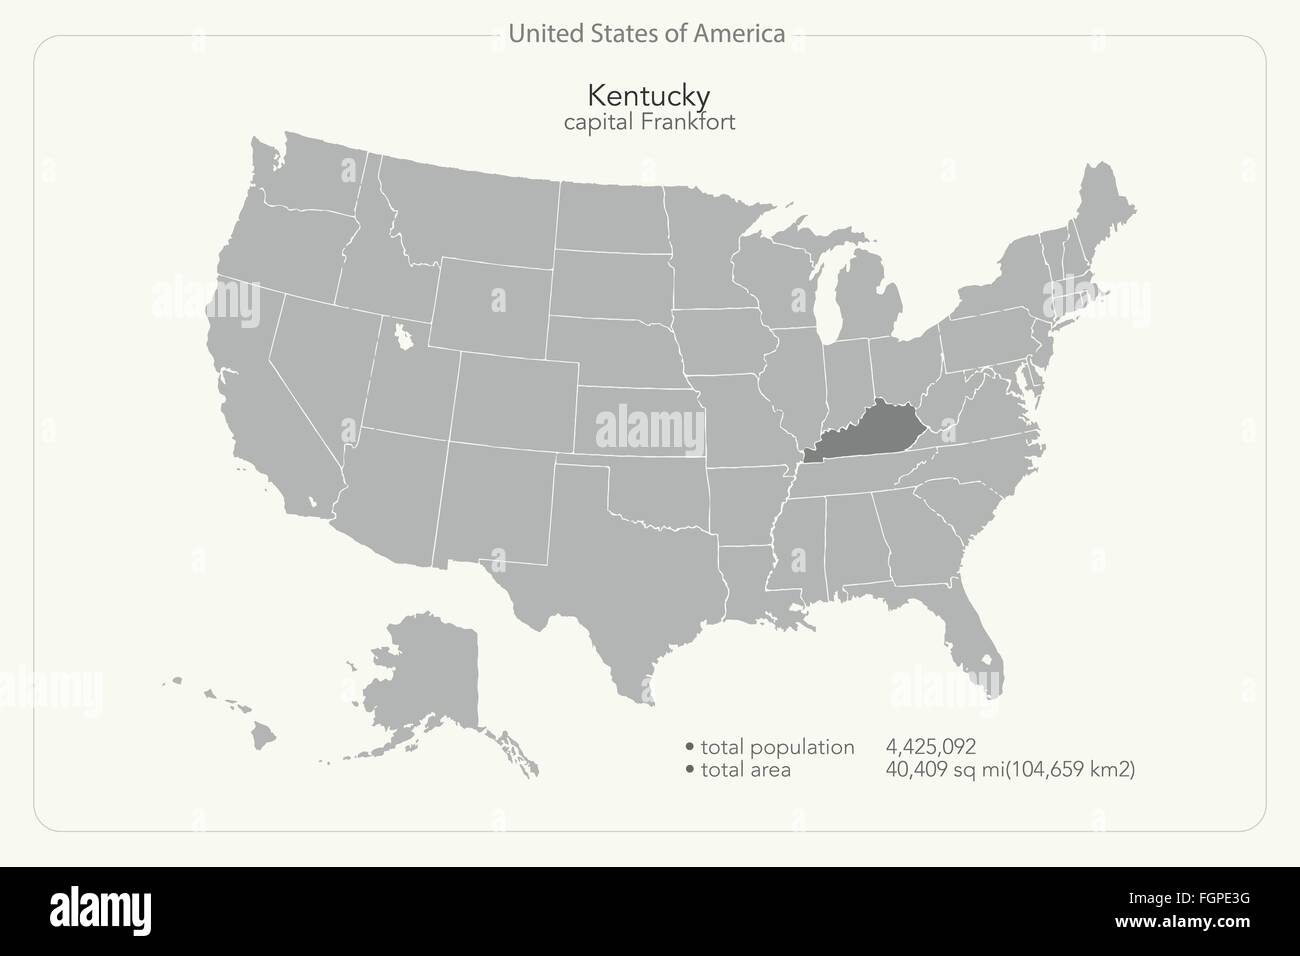 Stati Uniti d'America mappa isolato e Kentucky membro territorio. vettore politico USA mappa geografica modello di pagina di intestazione Illustrazione Vettoriale